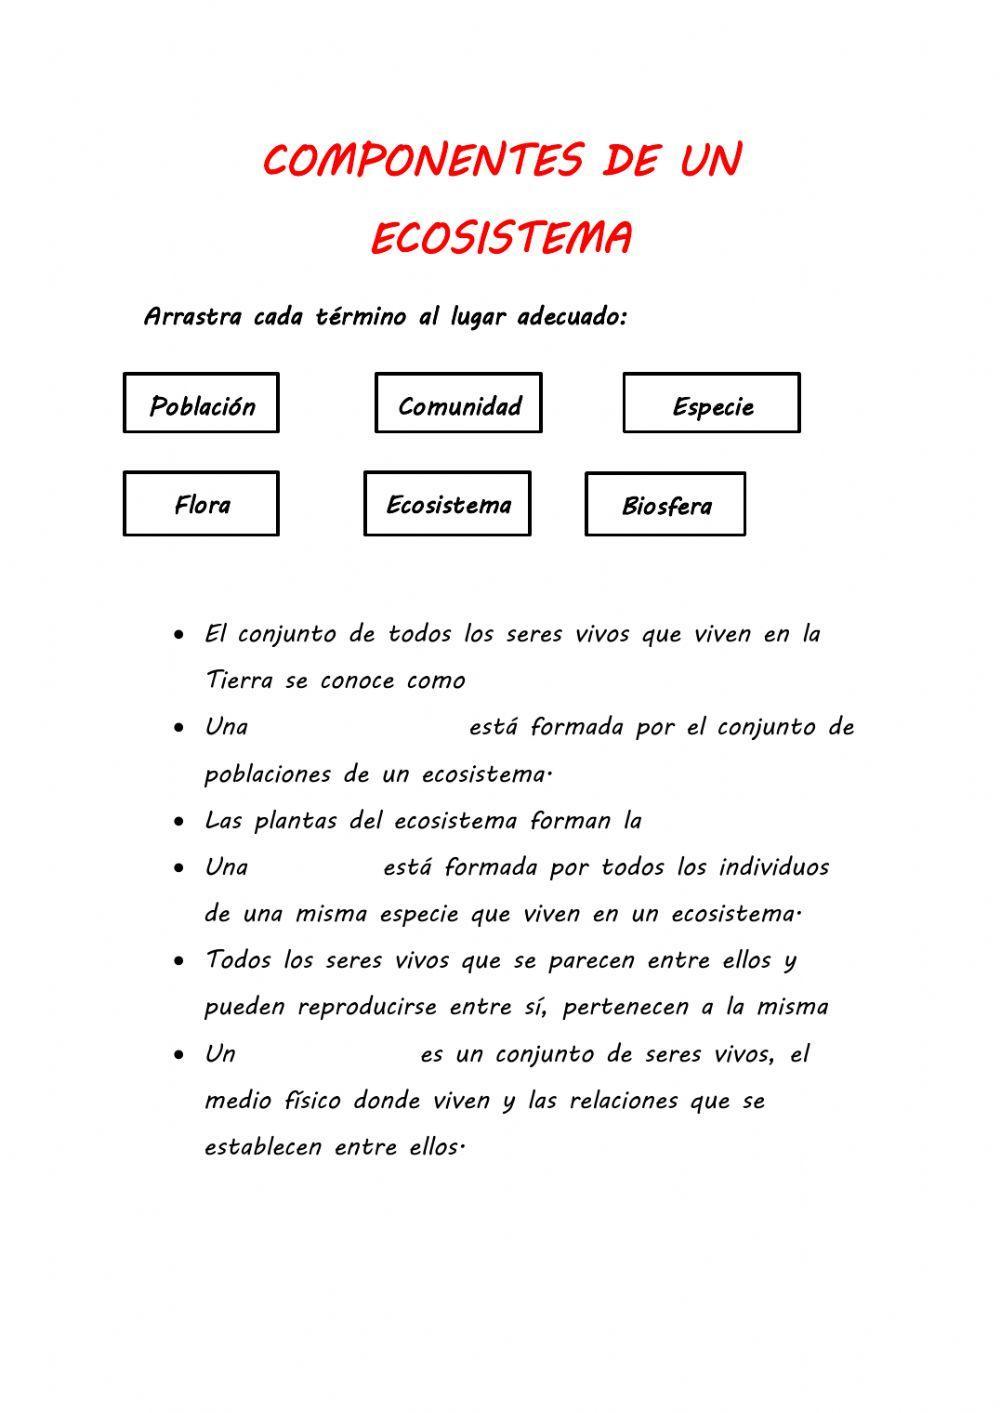 Componentes de un ecosistema